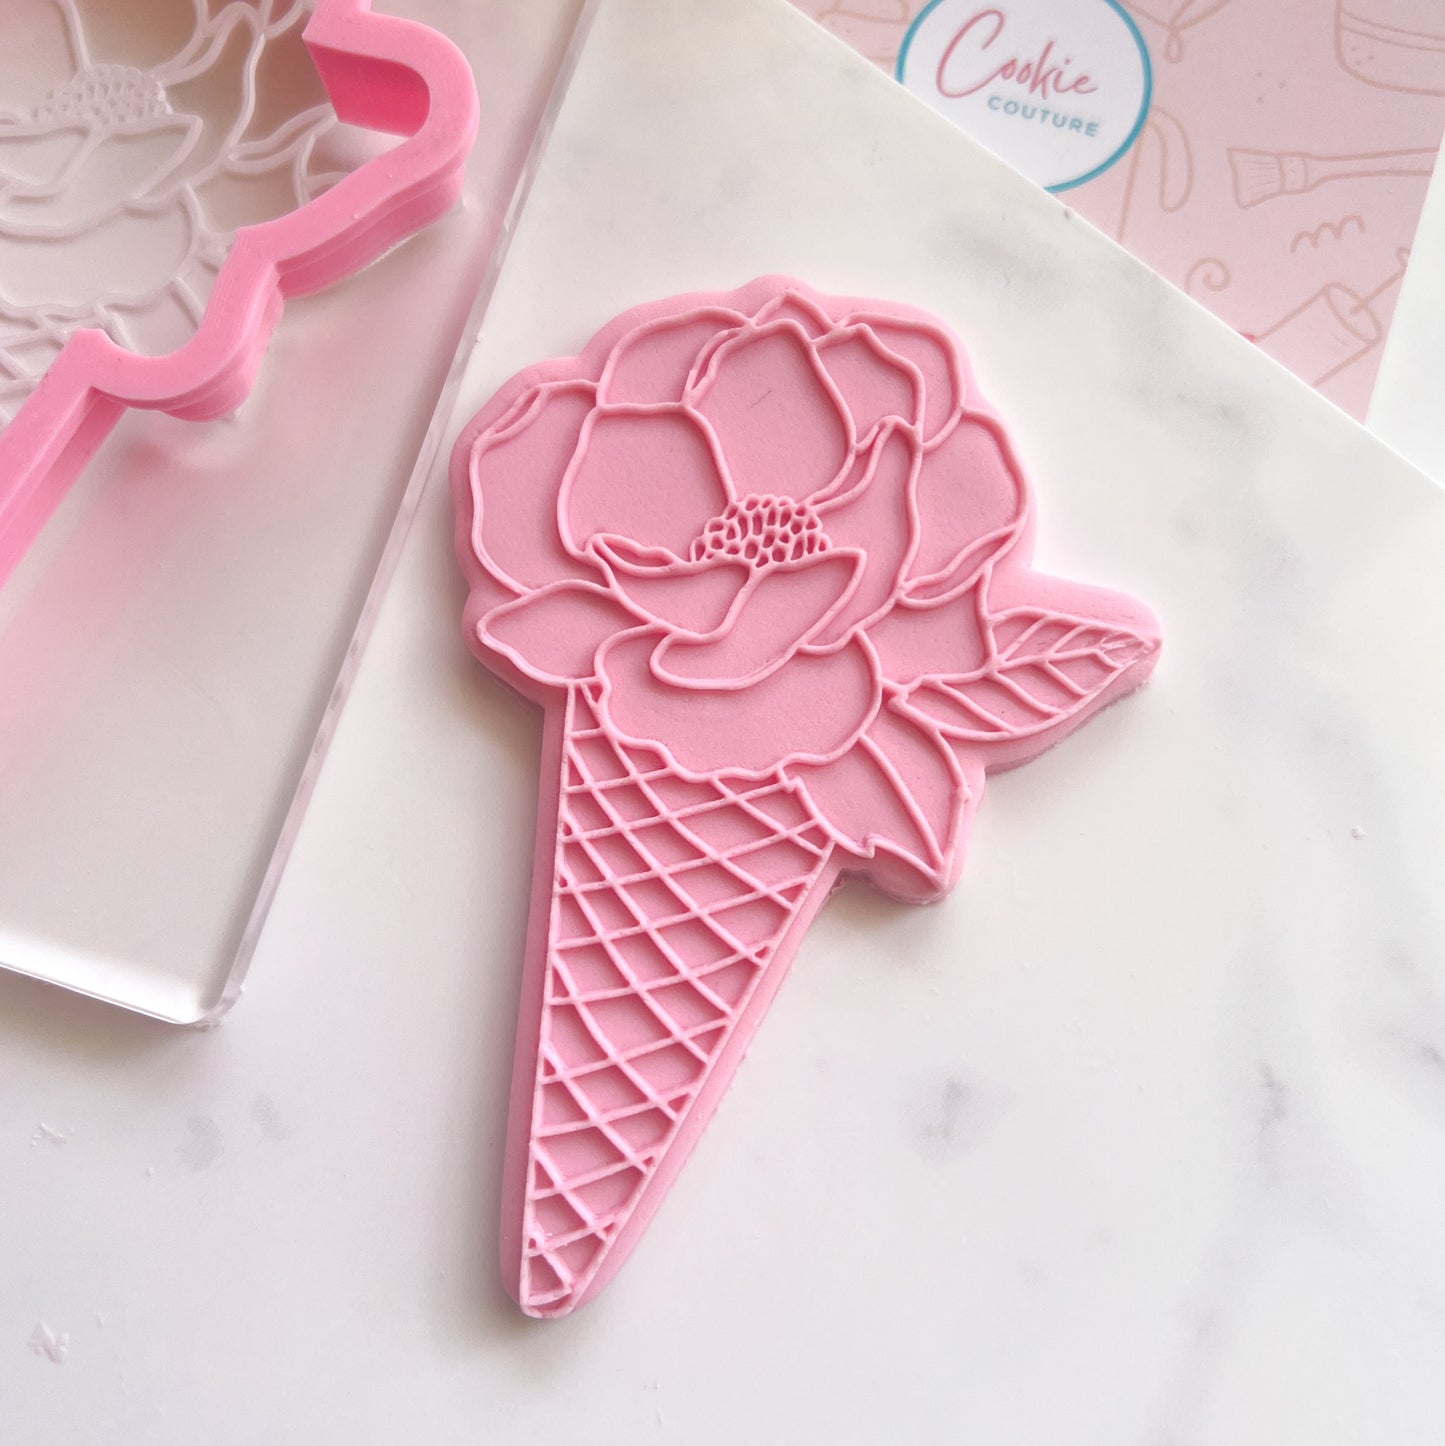 Floral Icecream - Stamp & Cutter Set